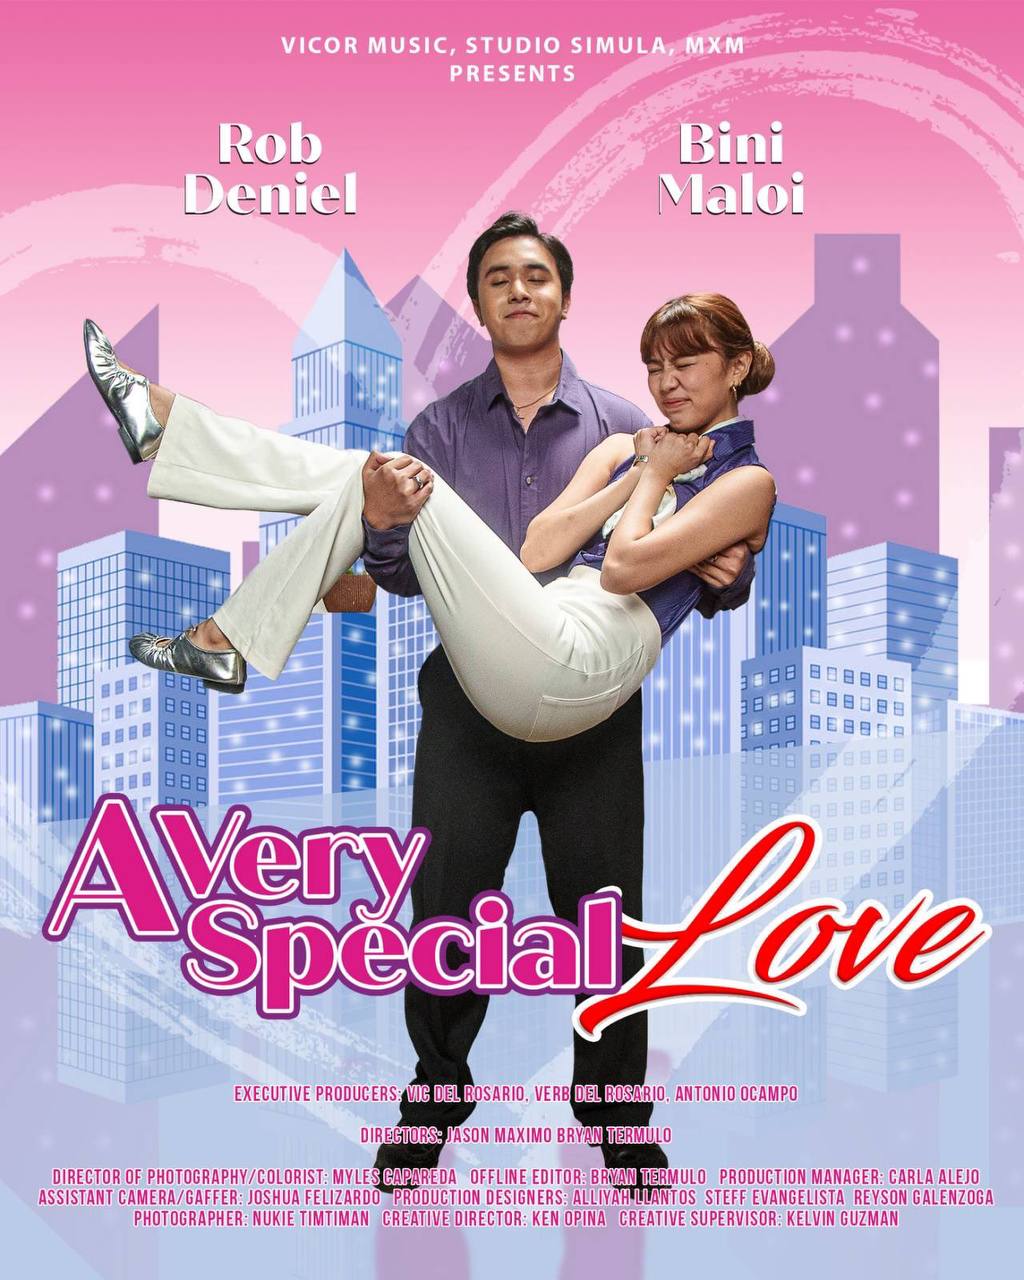 a very special love rob deniel movie poster